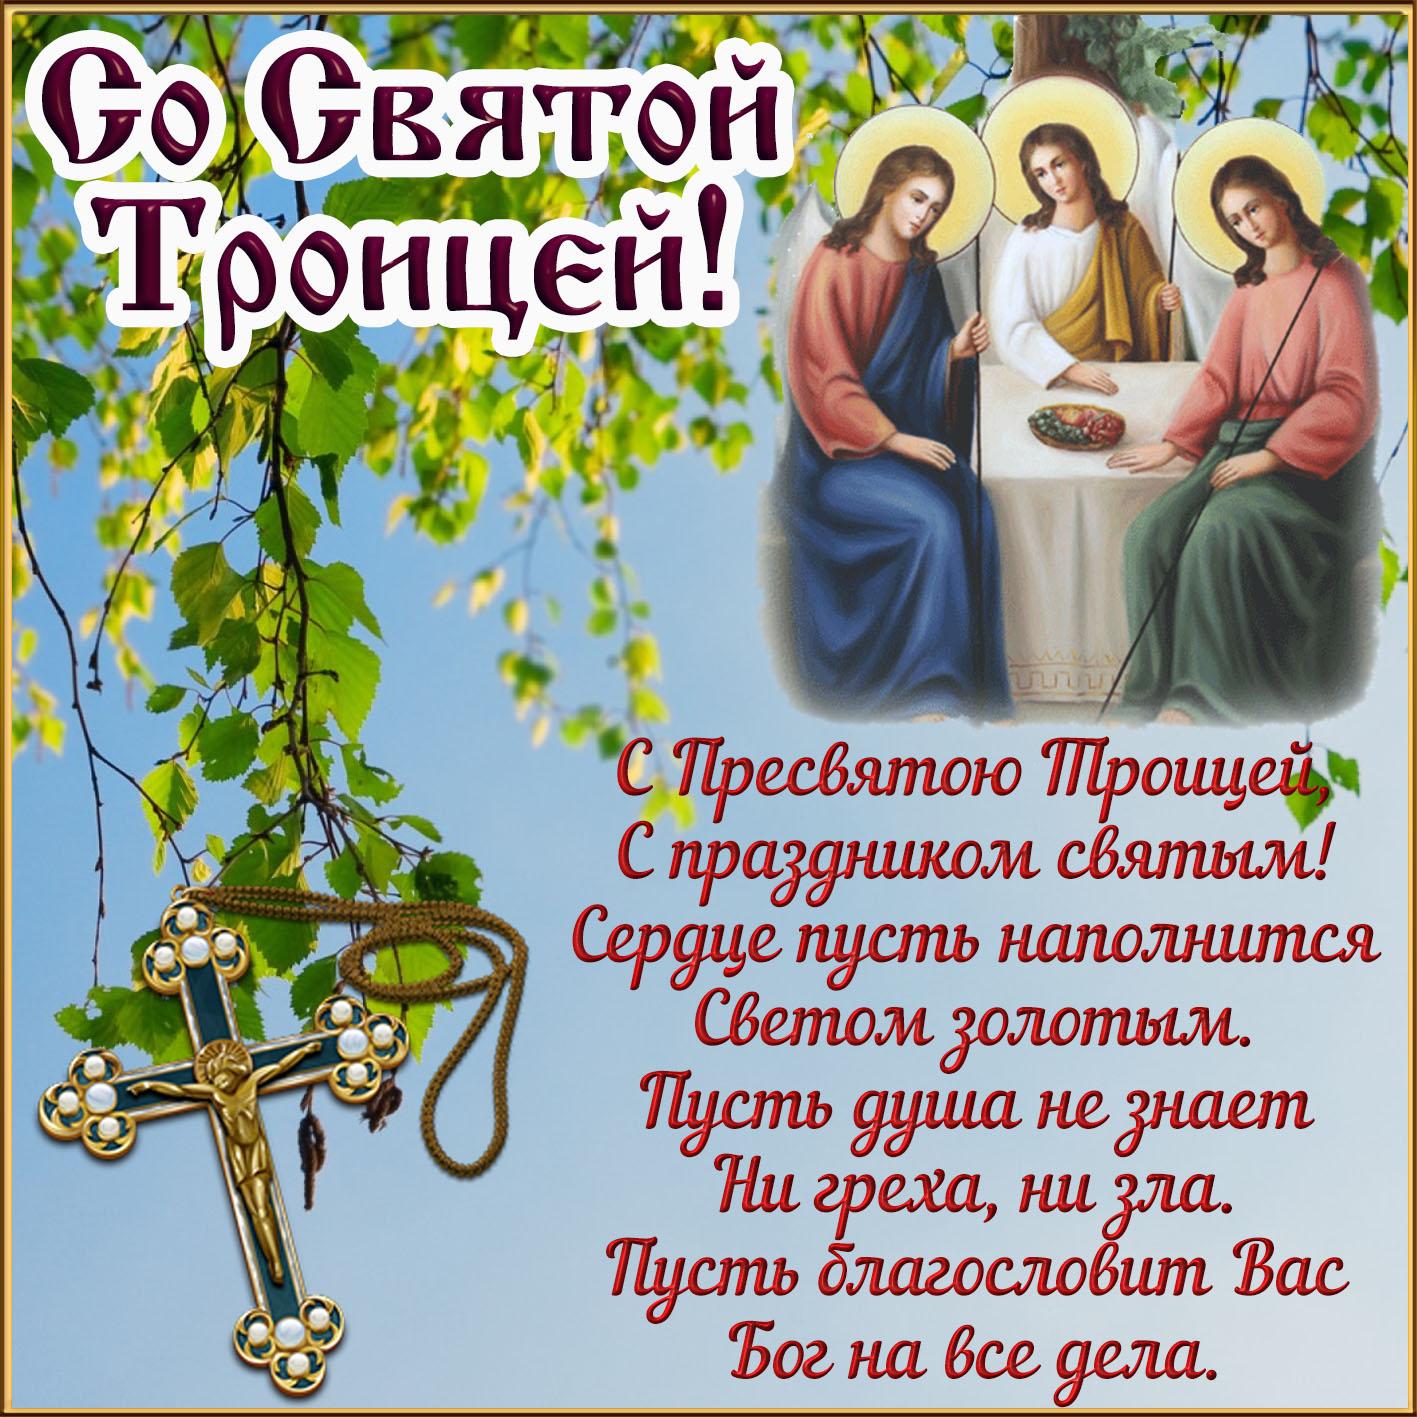 Фото Троица-2022: новые красивые открытки и поздравления со Святой Троицей верующим 4